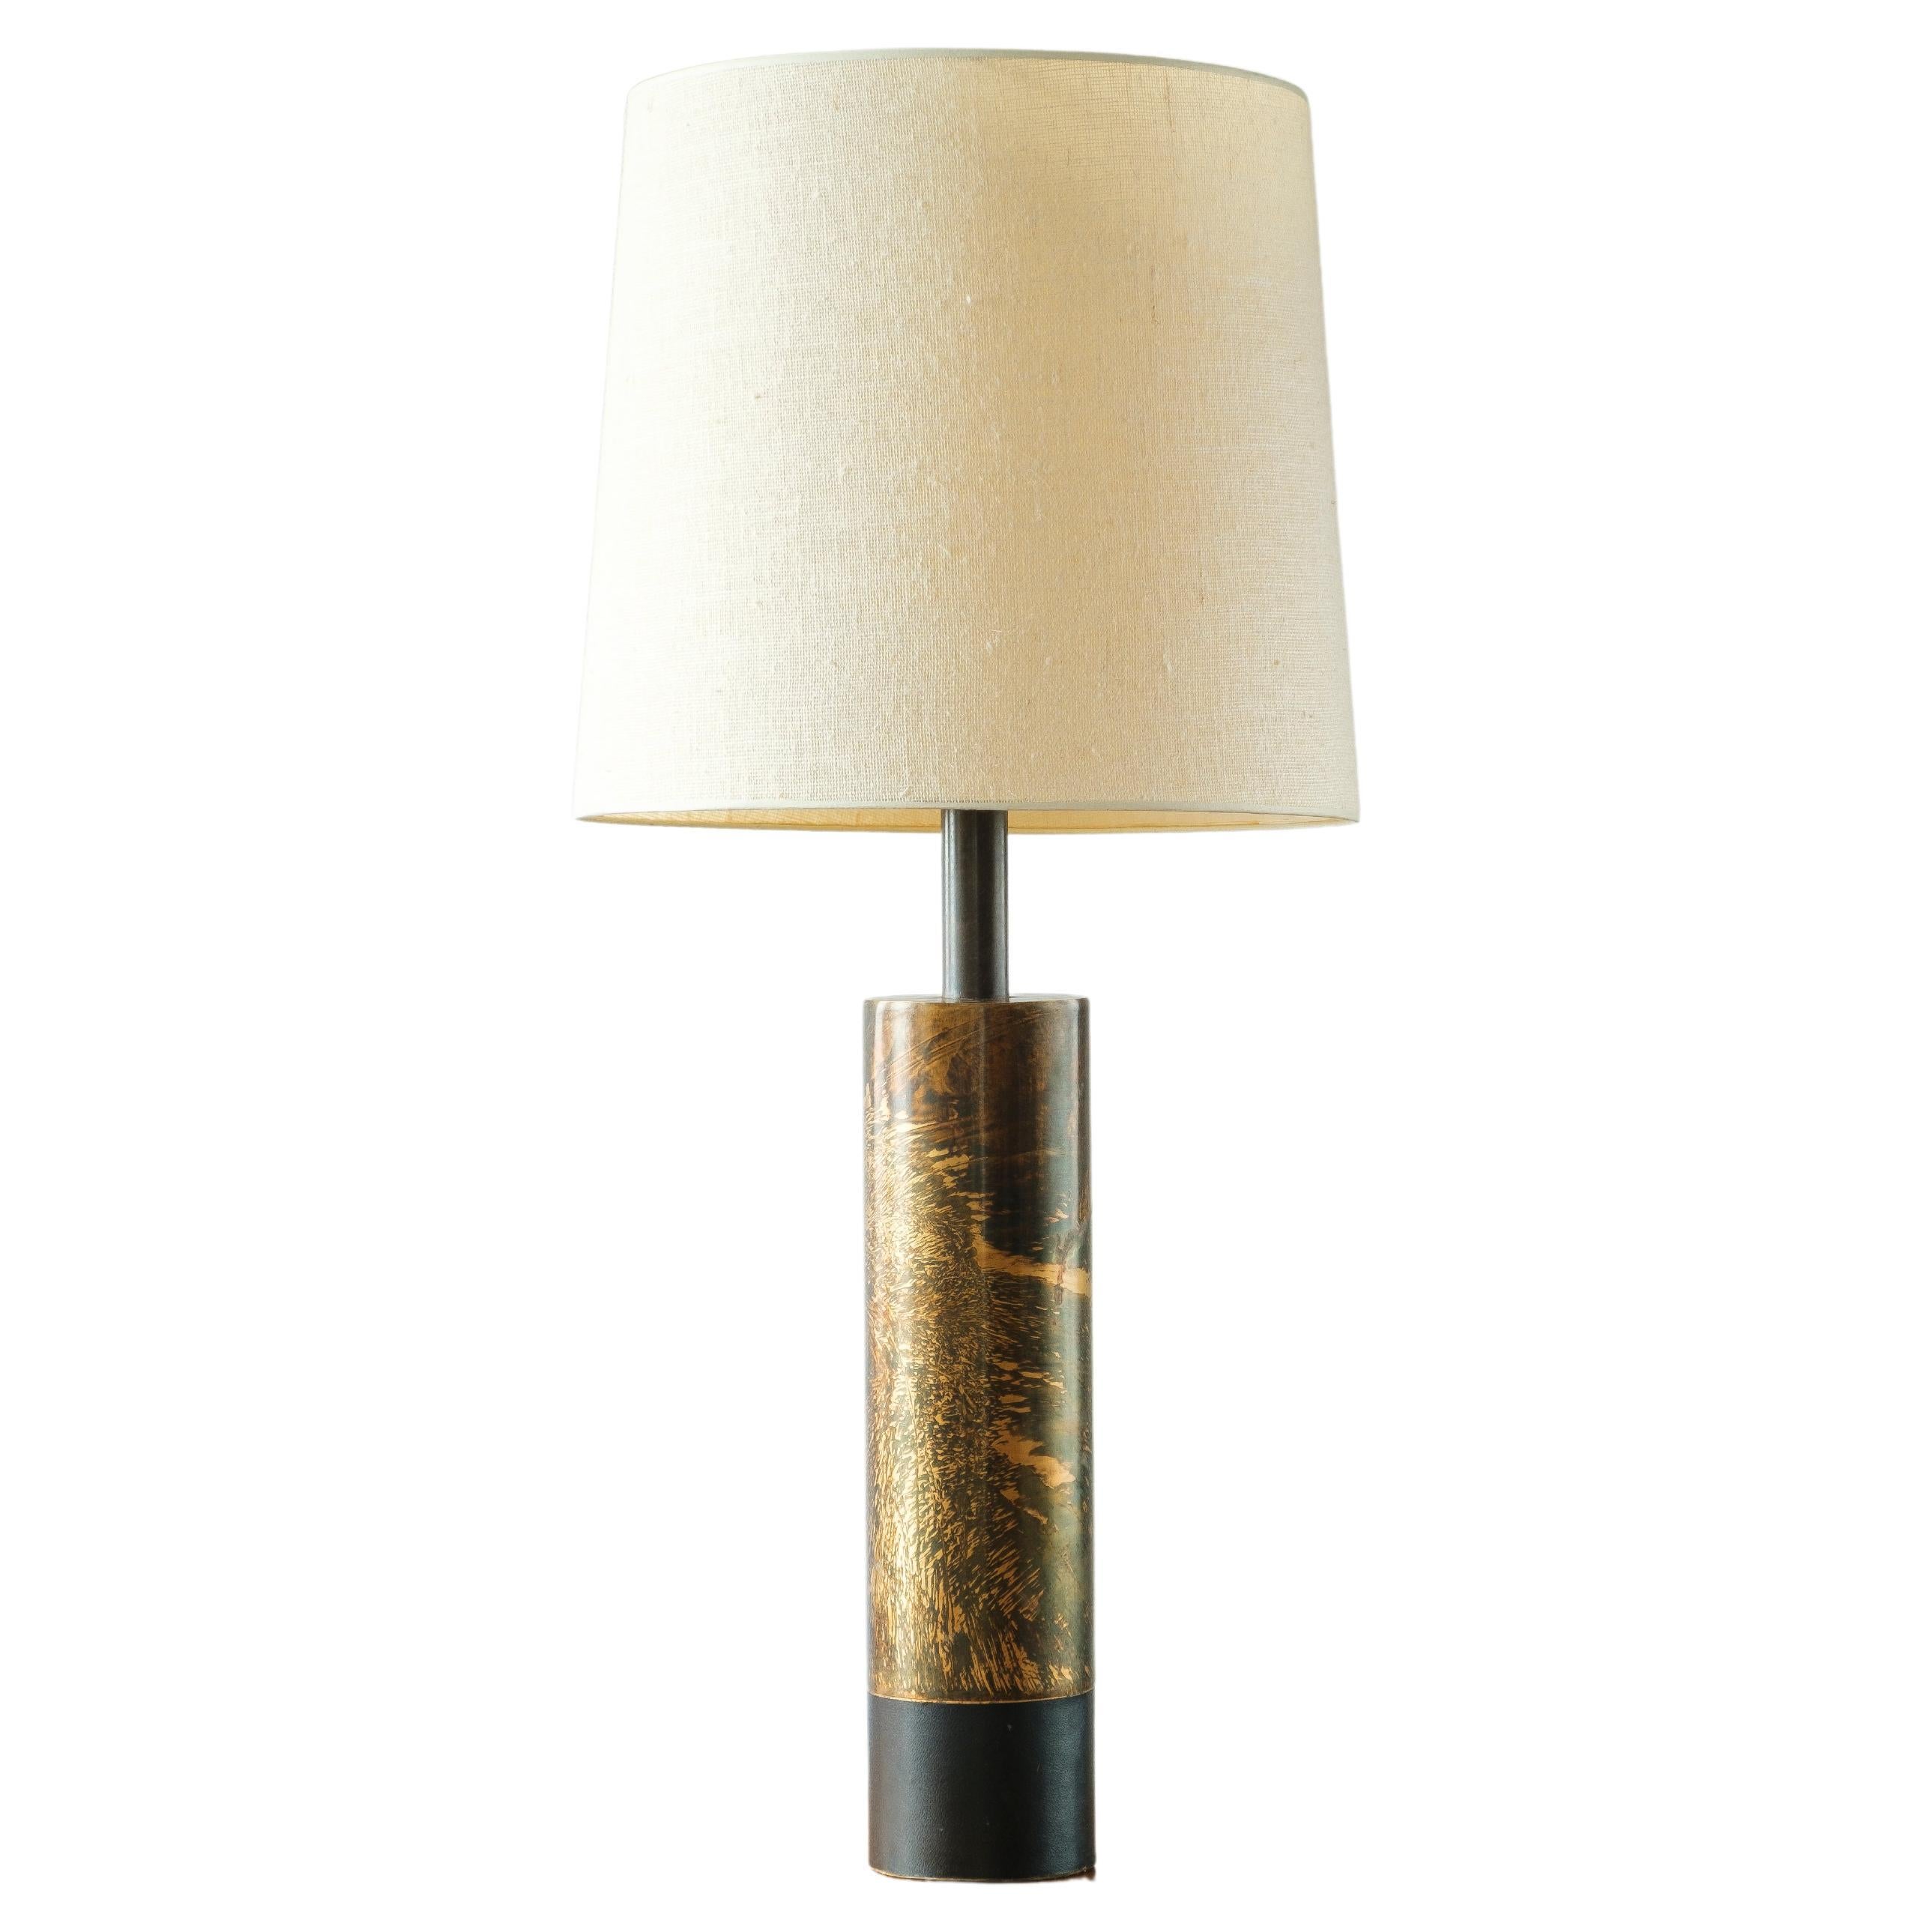 Lampe Laurel Lamp Co. H-890 Tischlampe aus säuregeätztem Messing mit Ledersockel und Manschetten